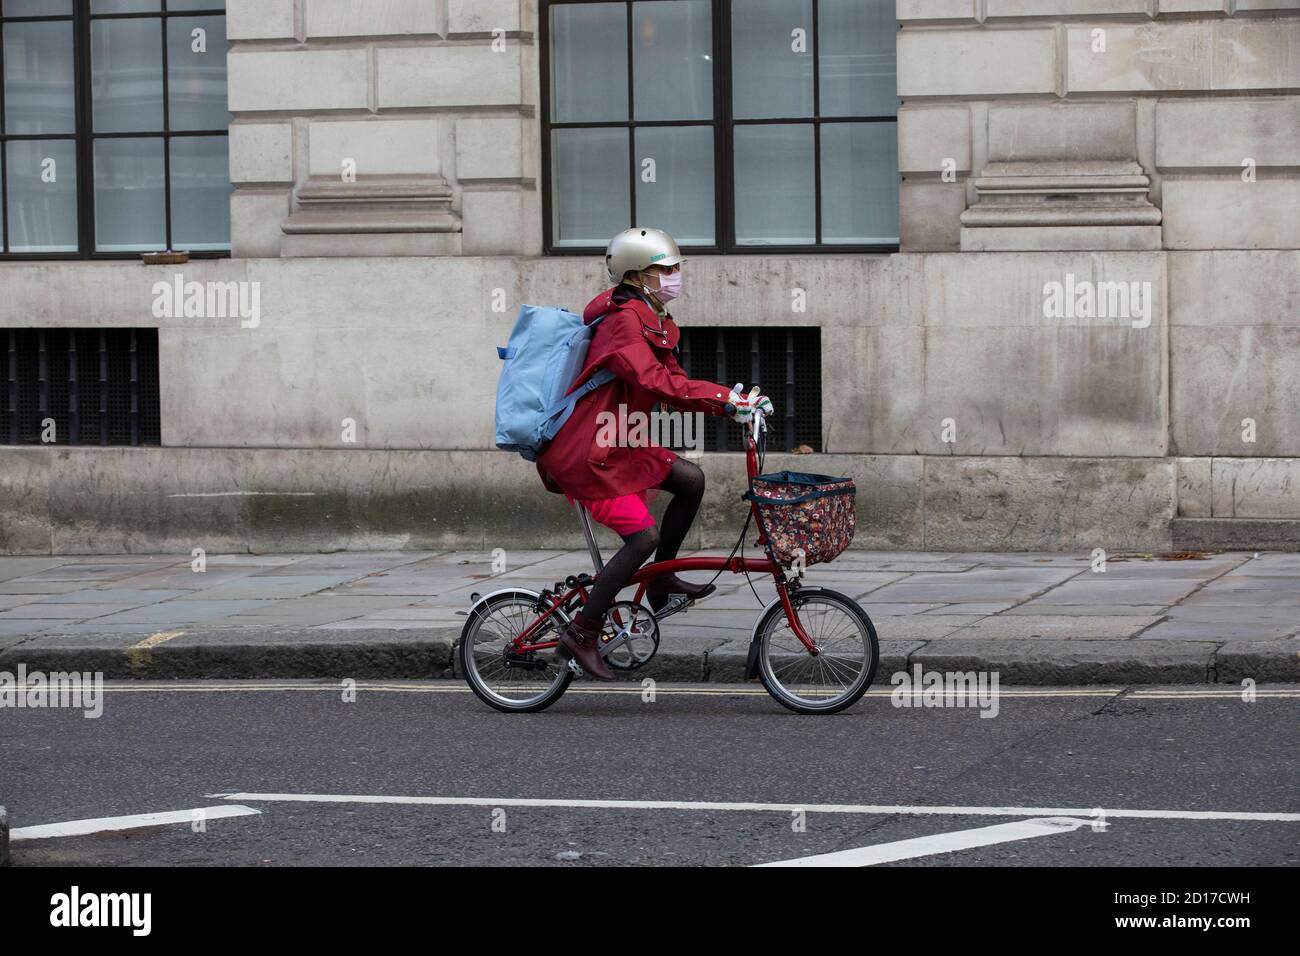 Un employé de la ville se rend dans la City de Londres deux roues pendant la crise financière pandémique du coronavirus Banque D'Images